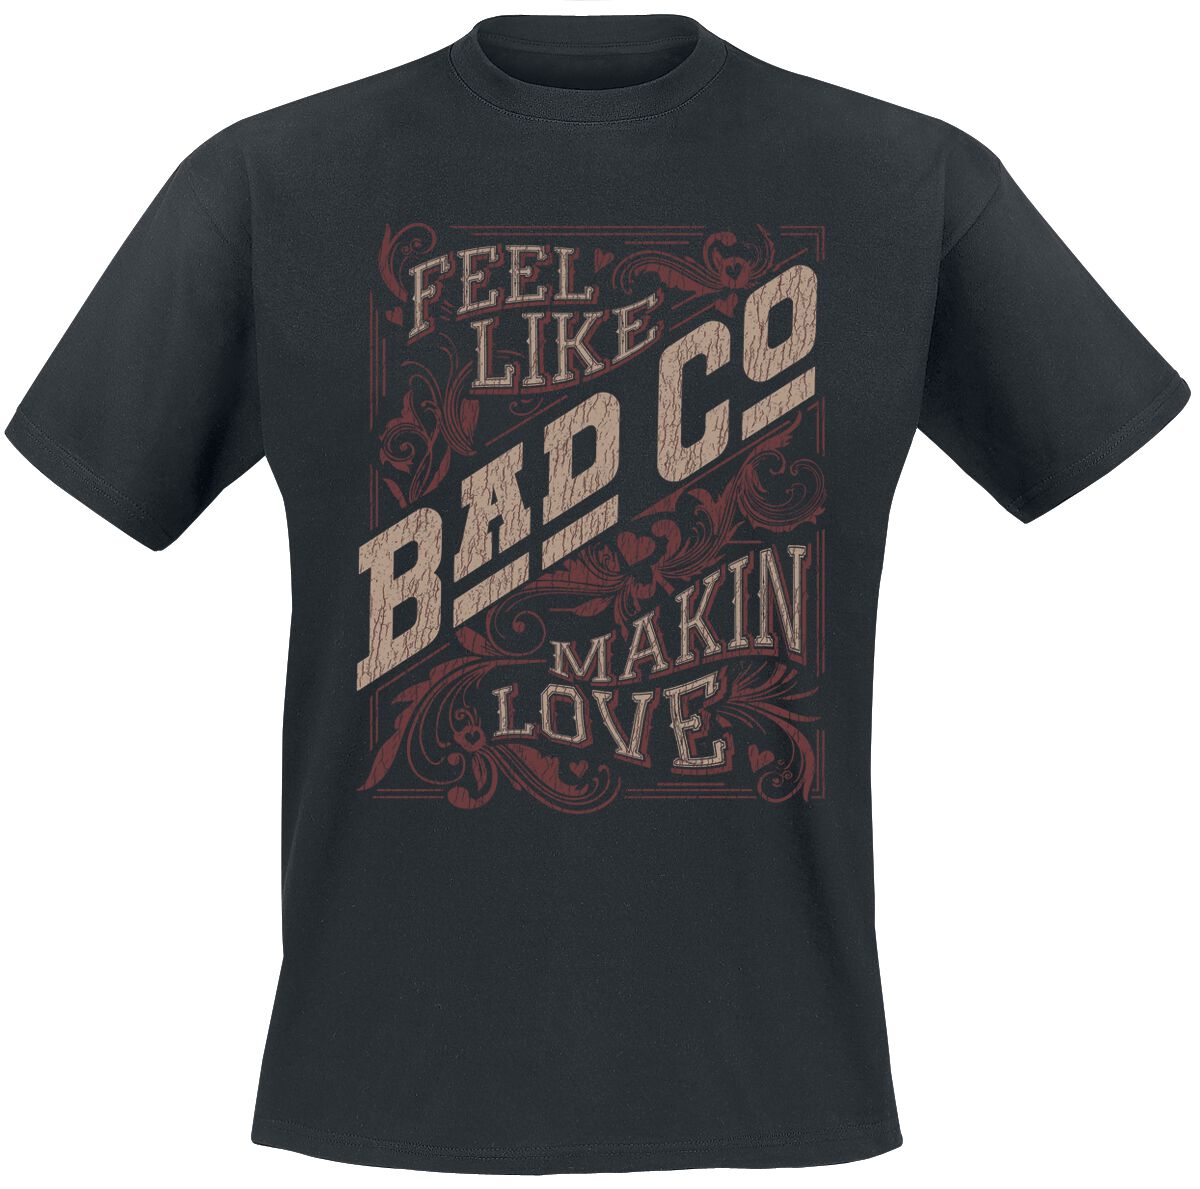 Bad Company Makin Love T-Shirt schwarz in M